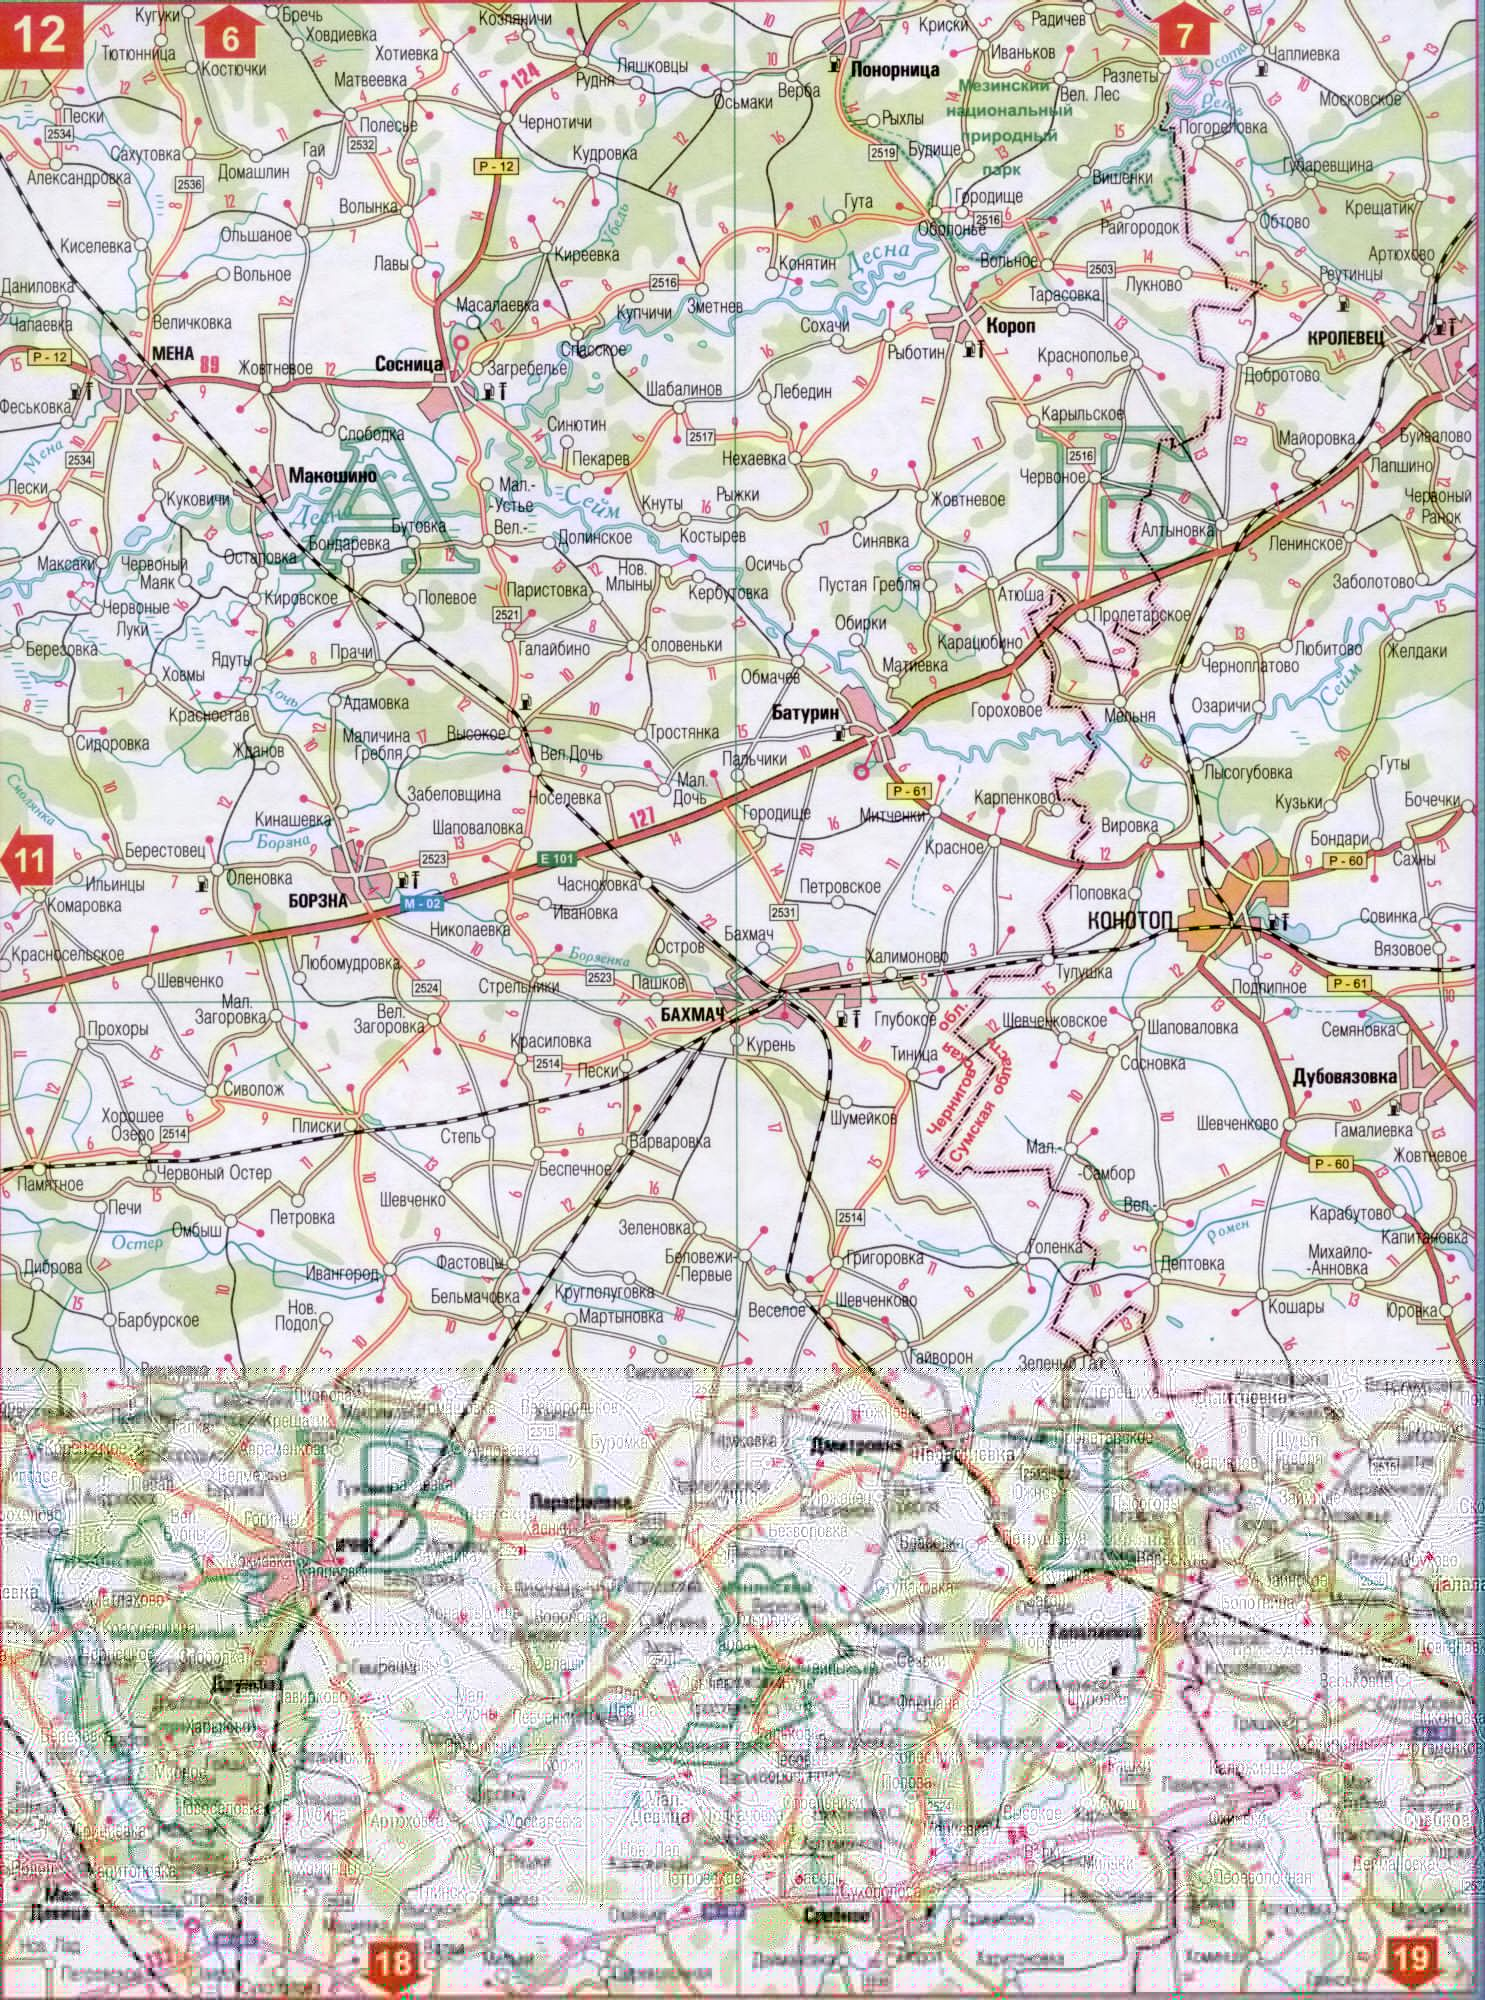 Карта Черниговской области Украины (областной центр г.Чернигов). Скачать бесплатно подробную карту автомобильных дорог, B0